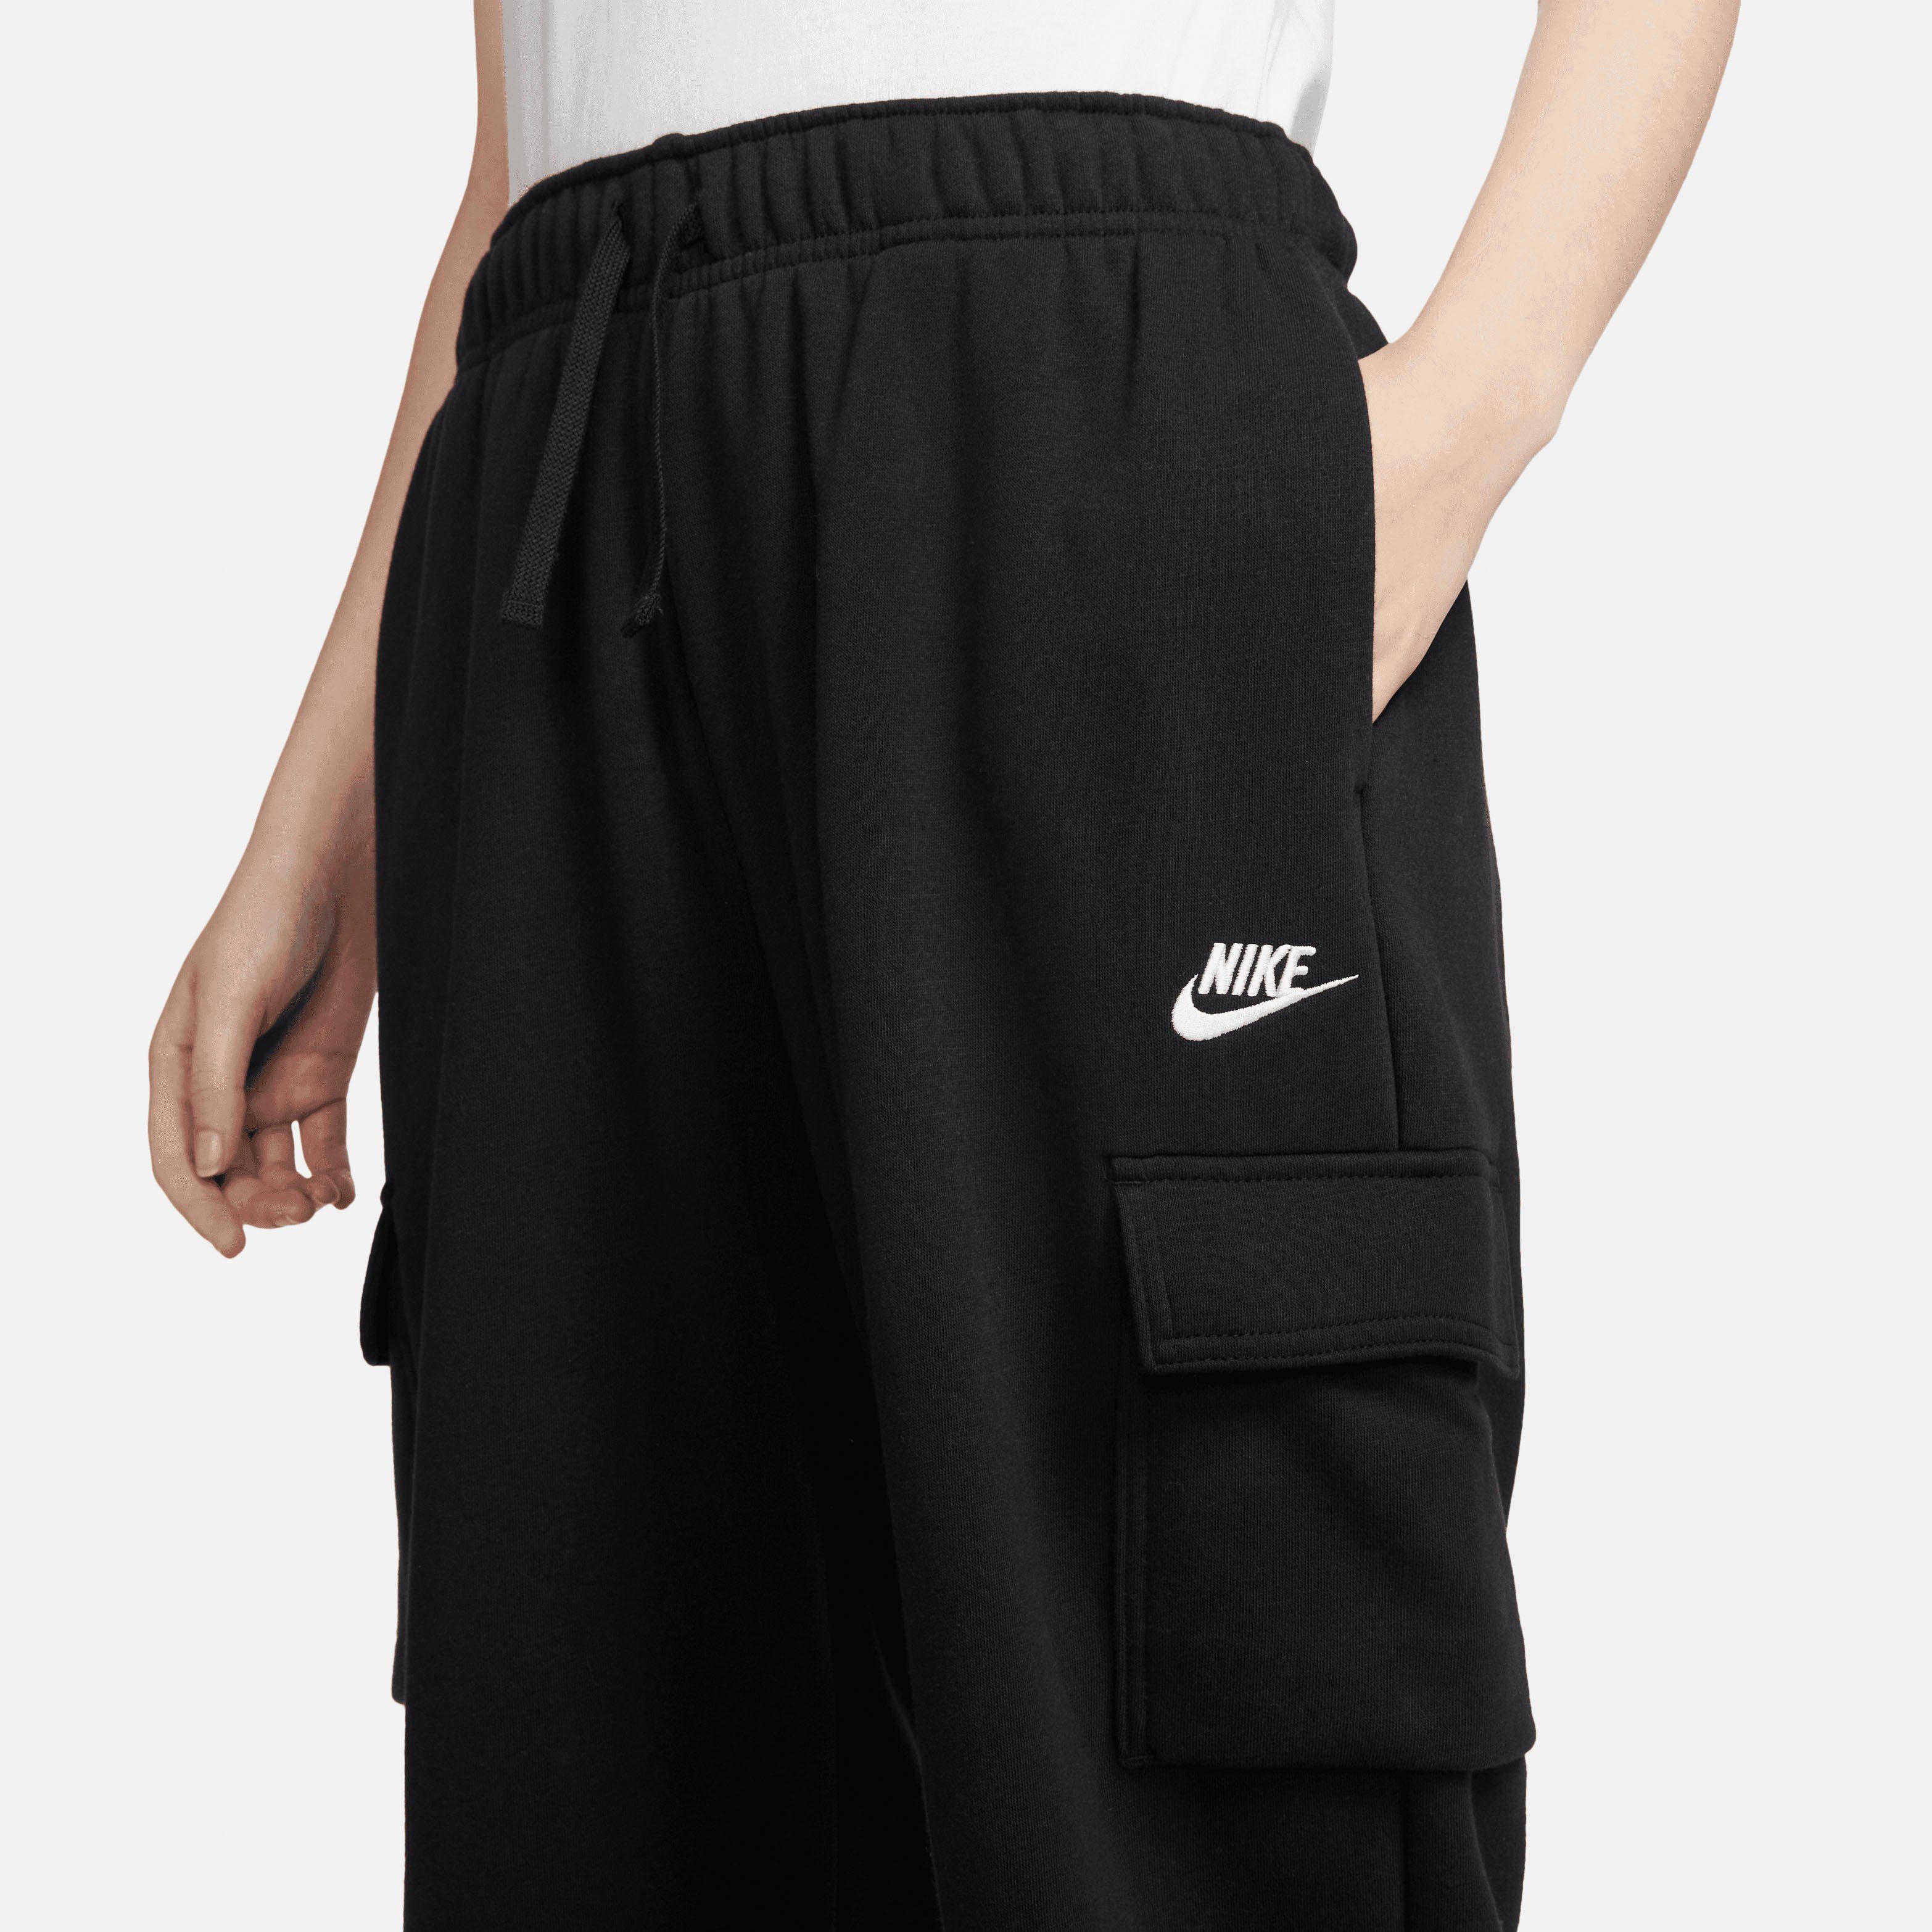 Oversized Cargo Sportswear Mid-Rise Jogginghose BLACK/WHITE Women's Nike Club Sweatpants Fleece